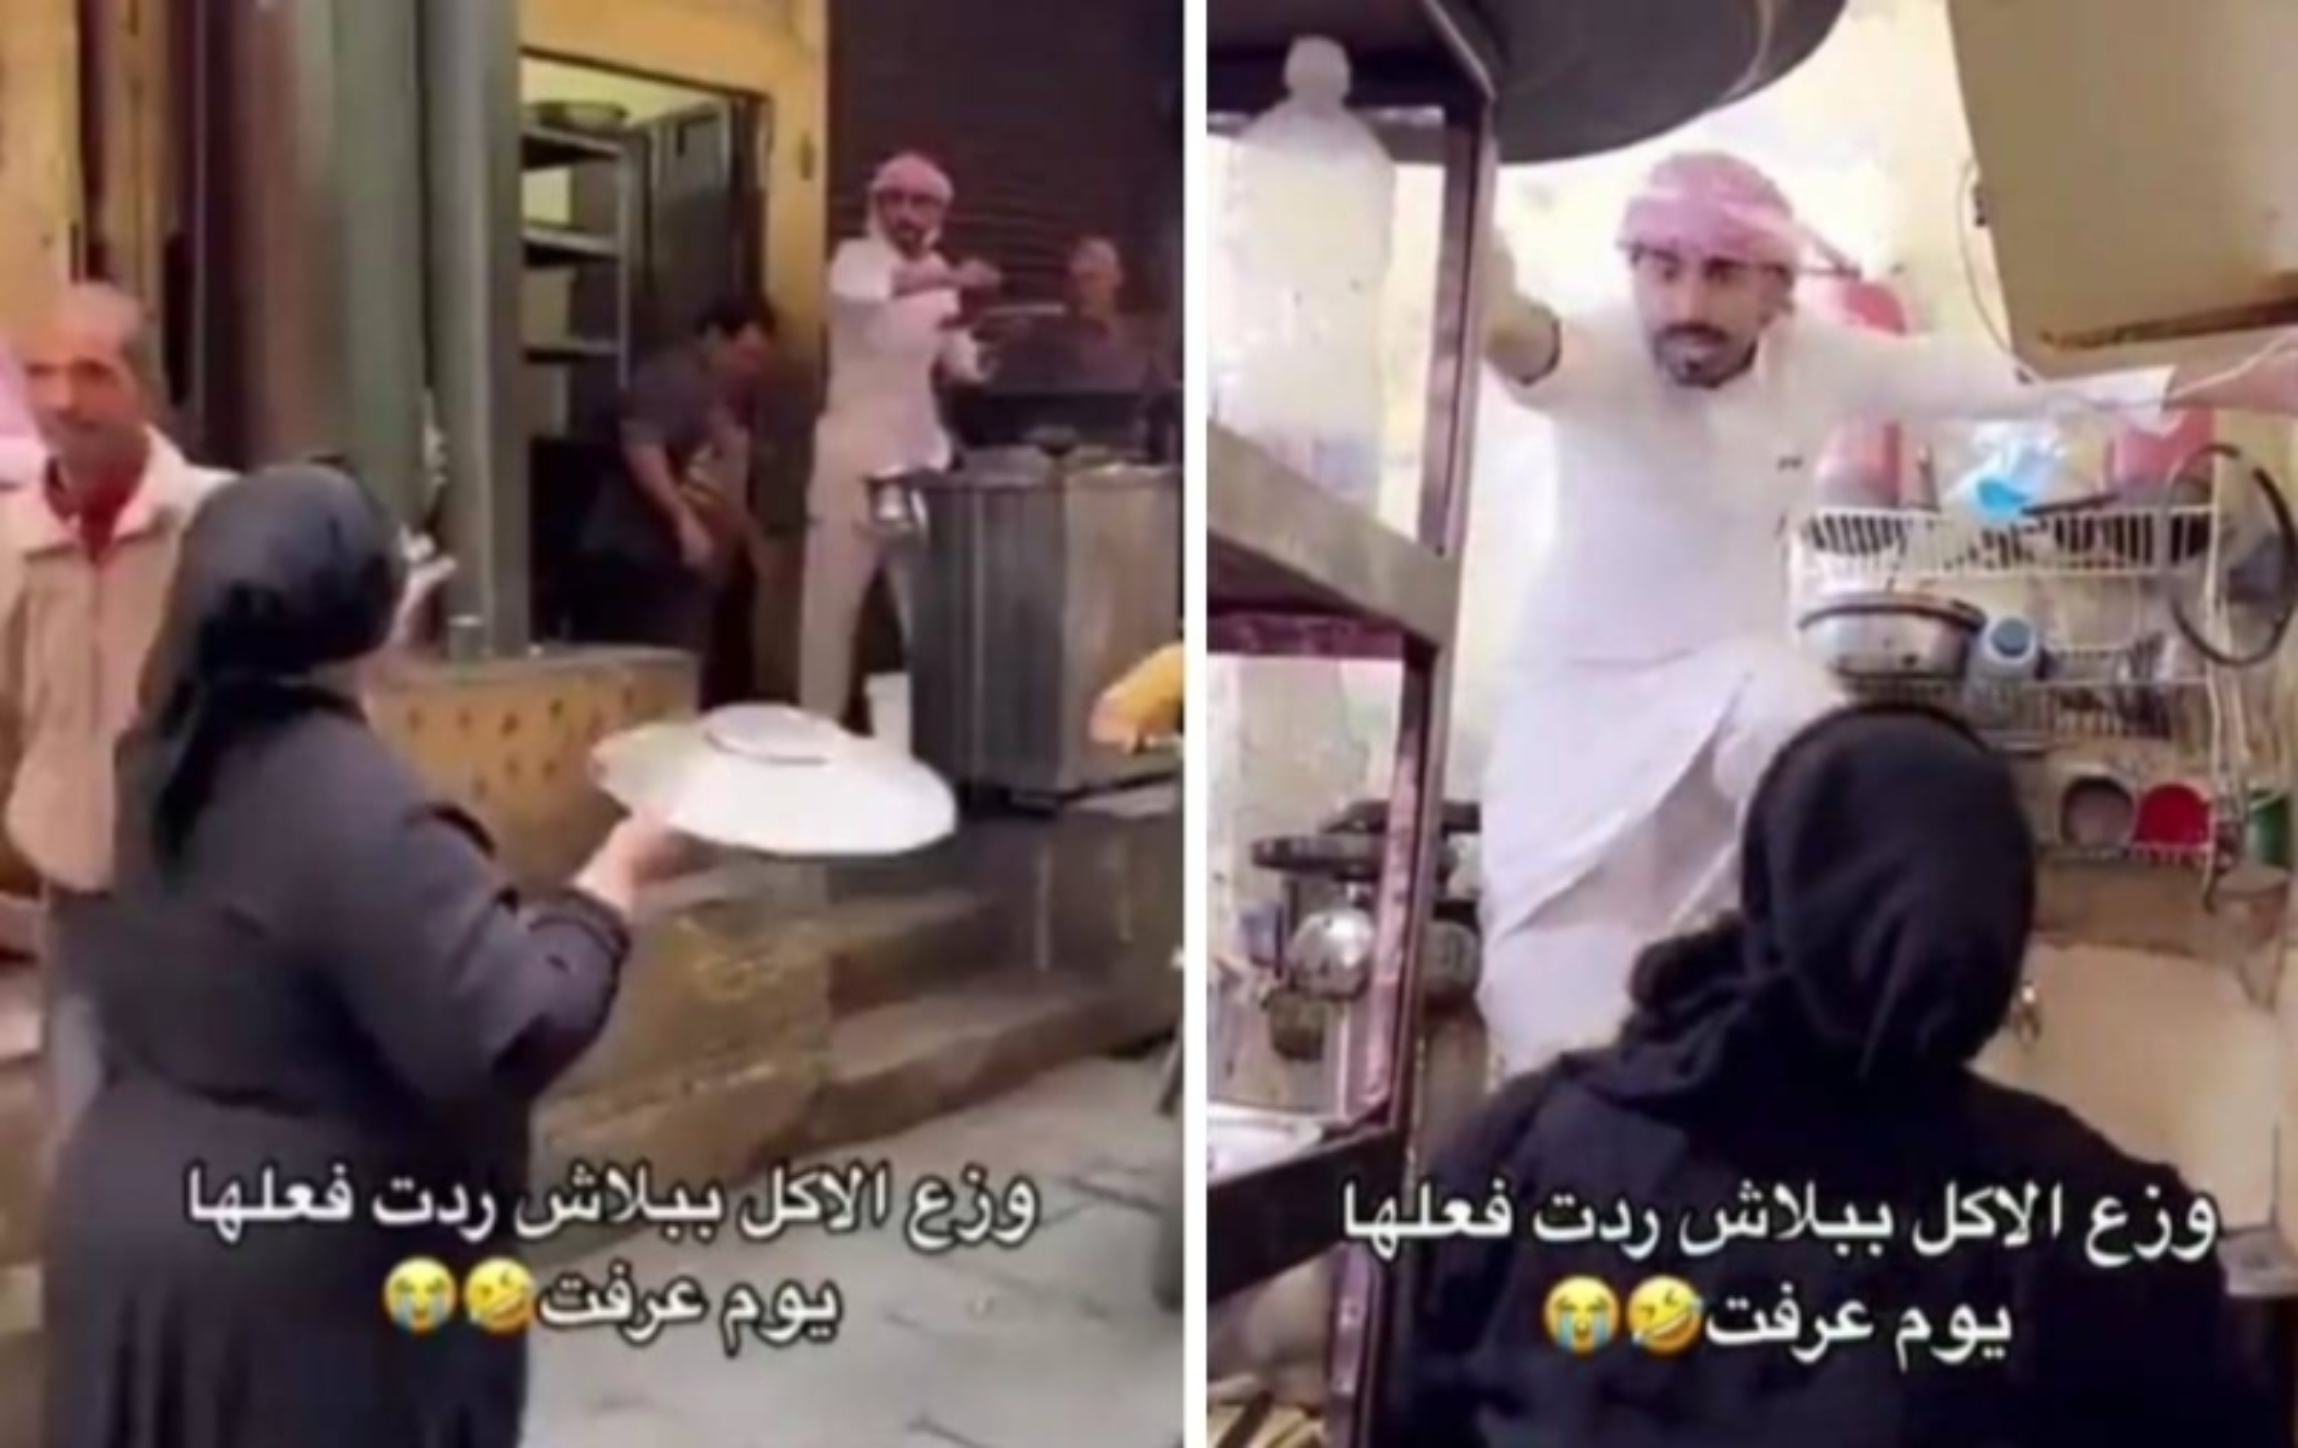 سعودي ينفذ "مقلب" في صاحبة محل "خالتي فرنسا" في مصر ويوزع الطعام مجانا.. شاهد ردة فعلها